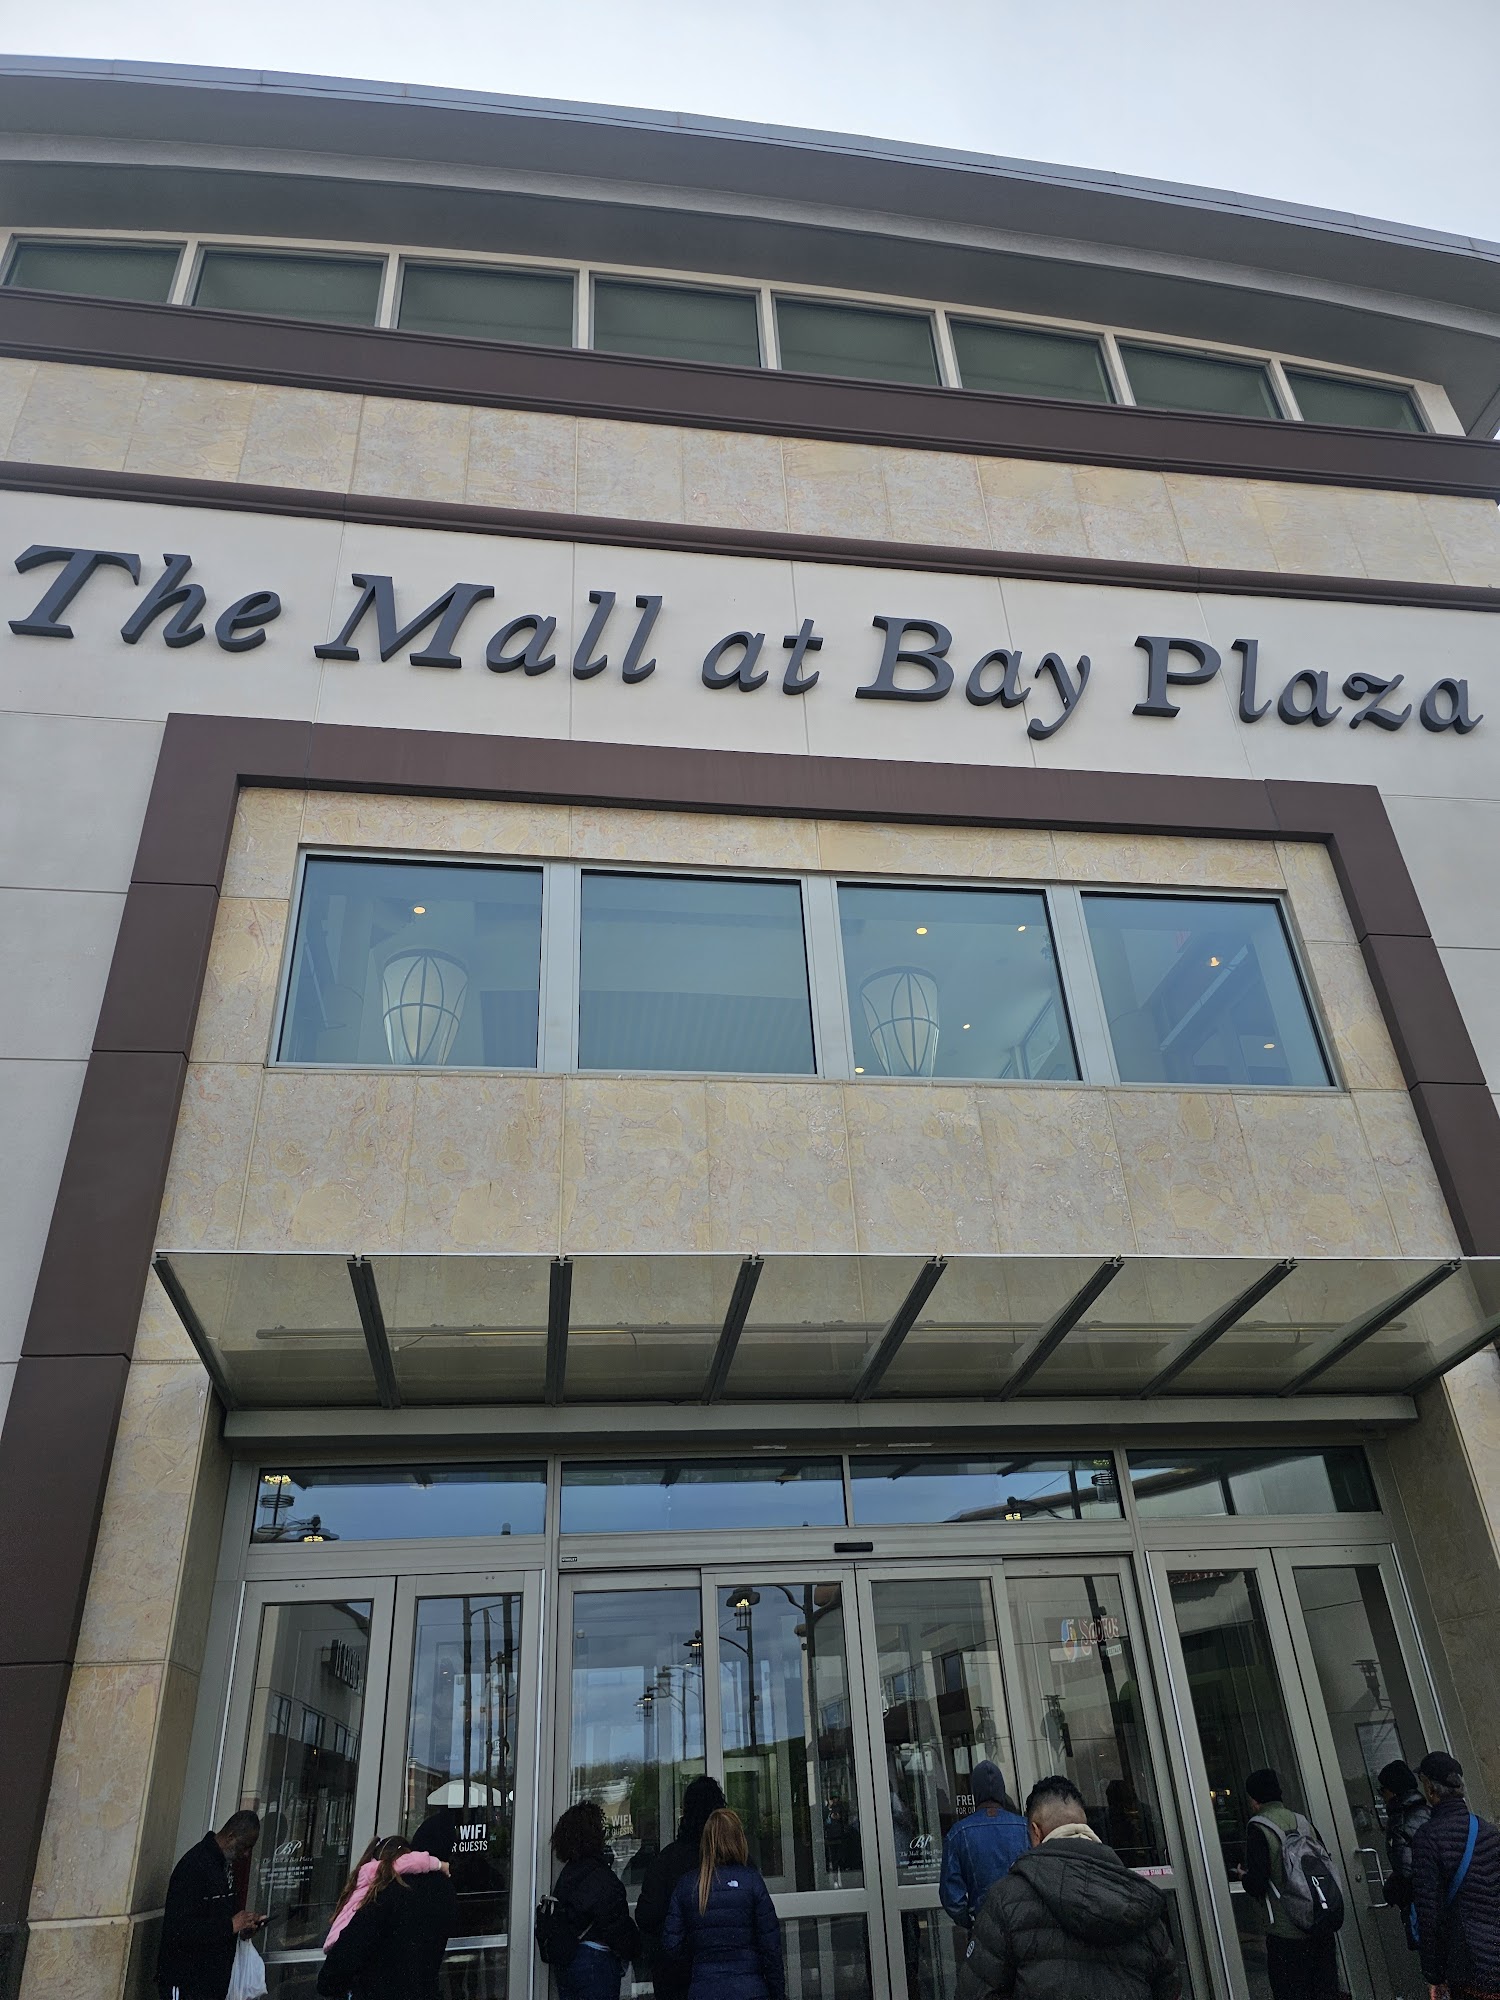 The Mall at Bay Plaza